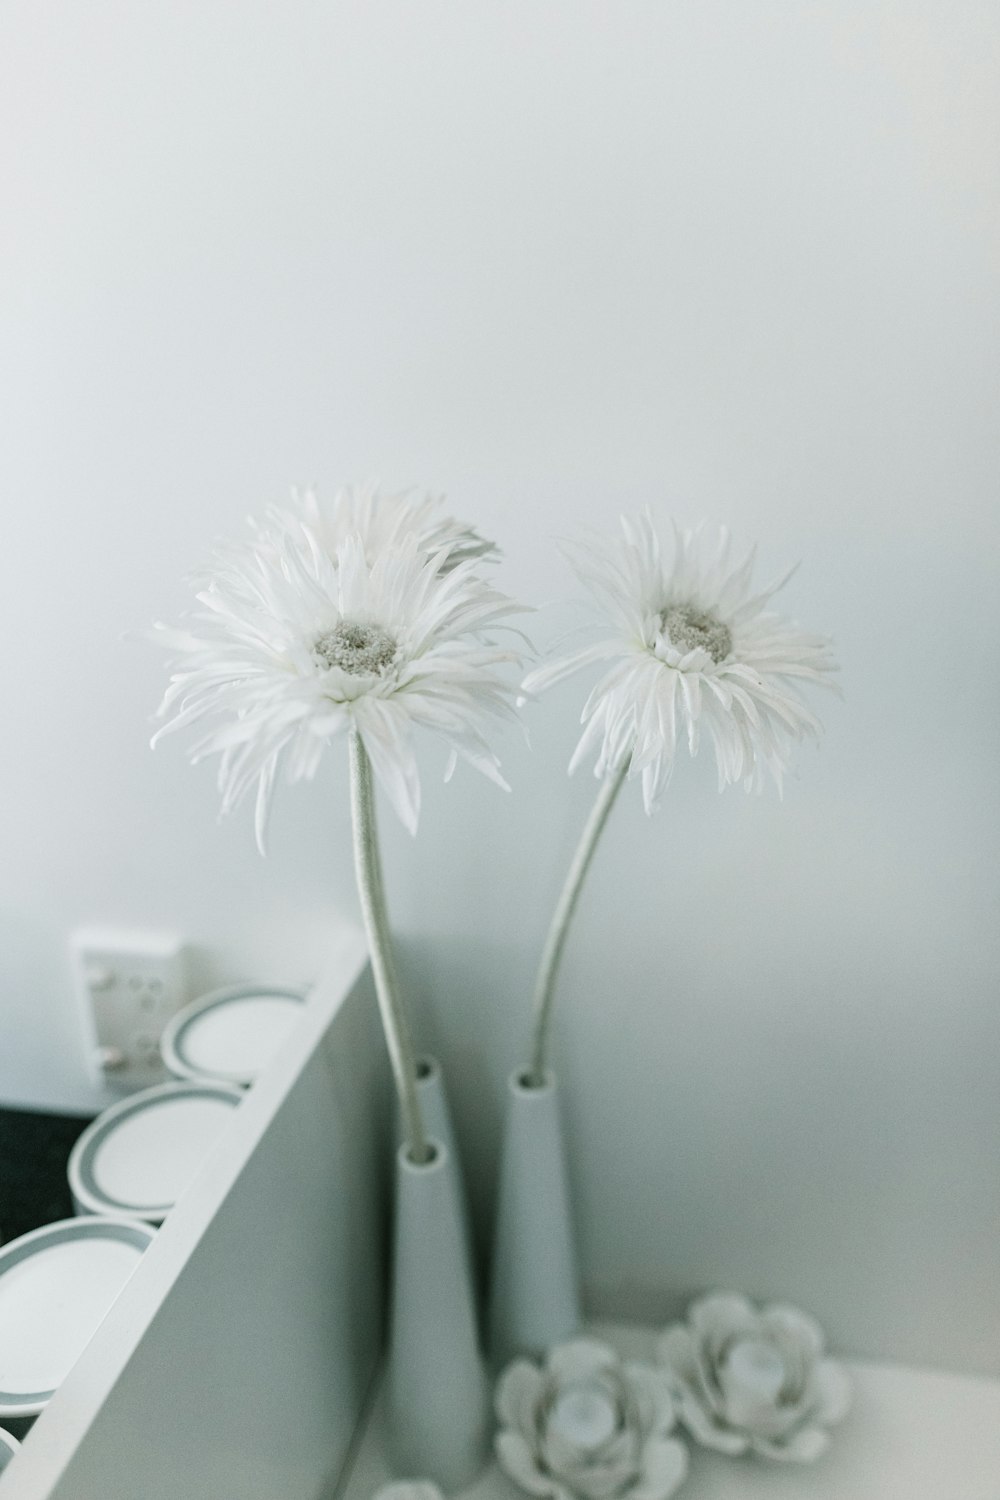 white daisy flowers in vase